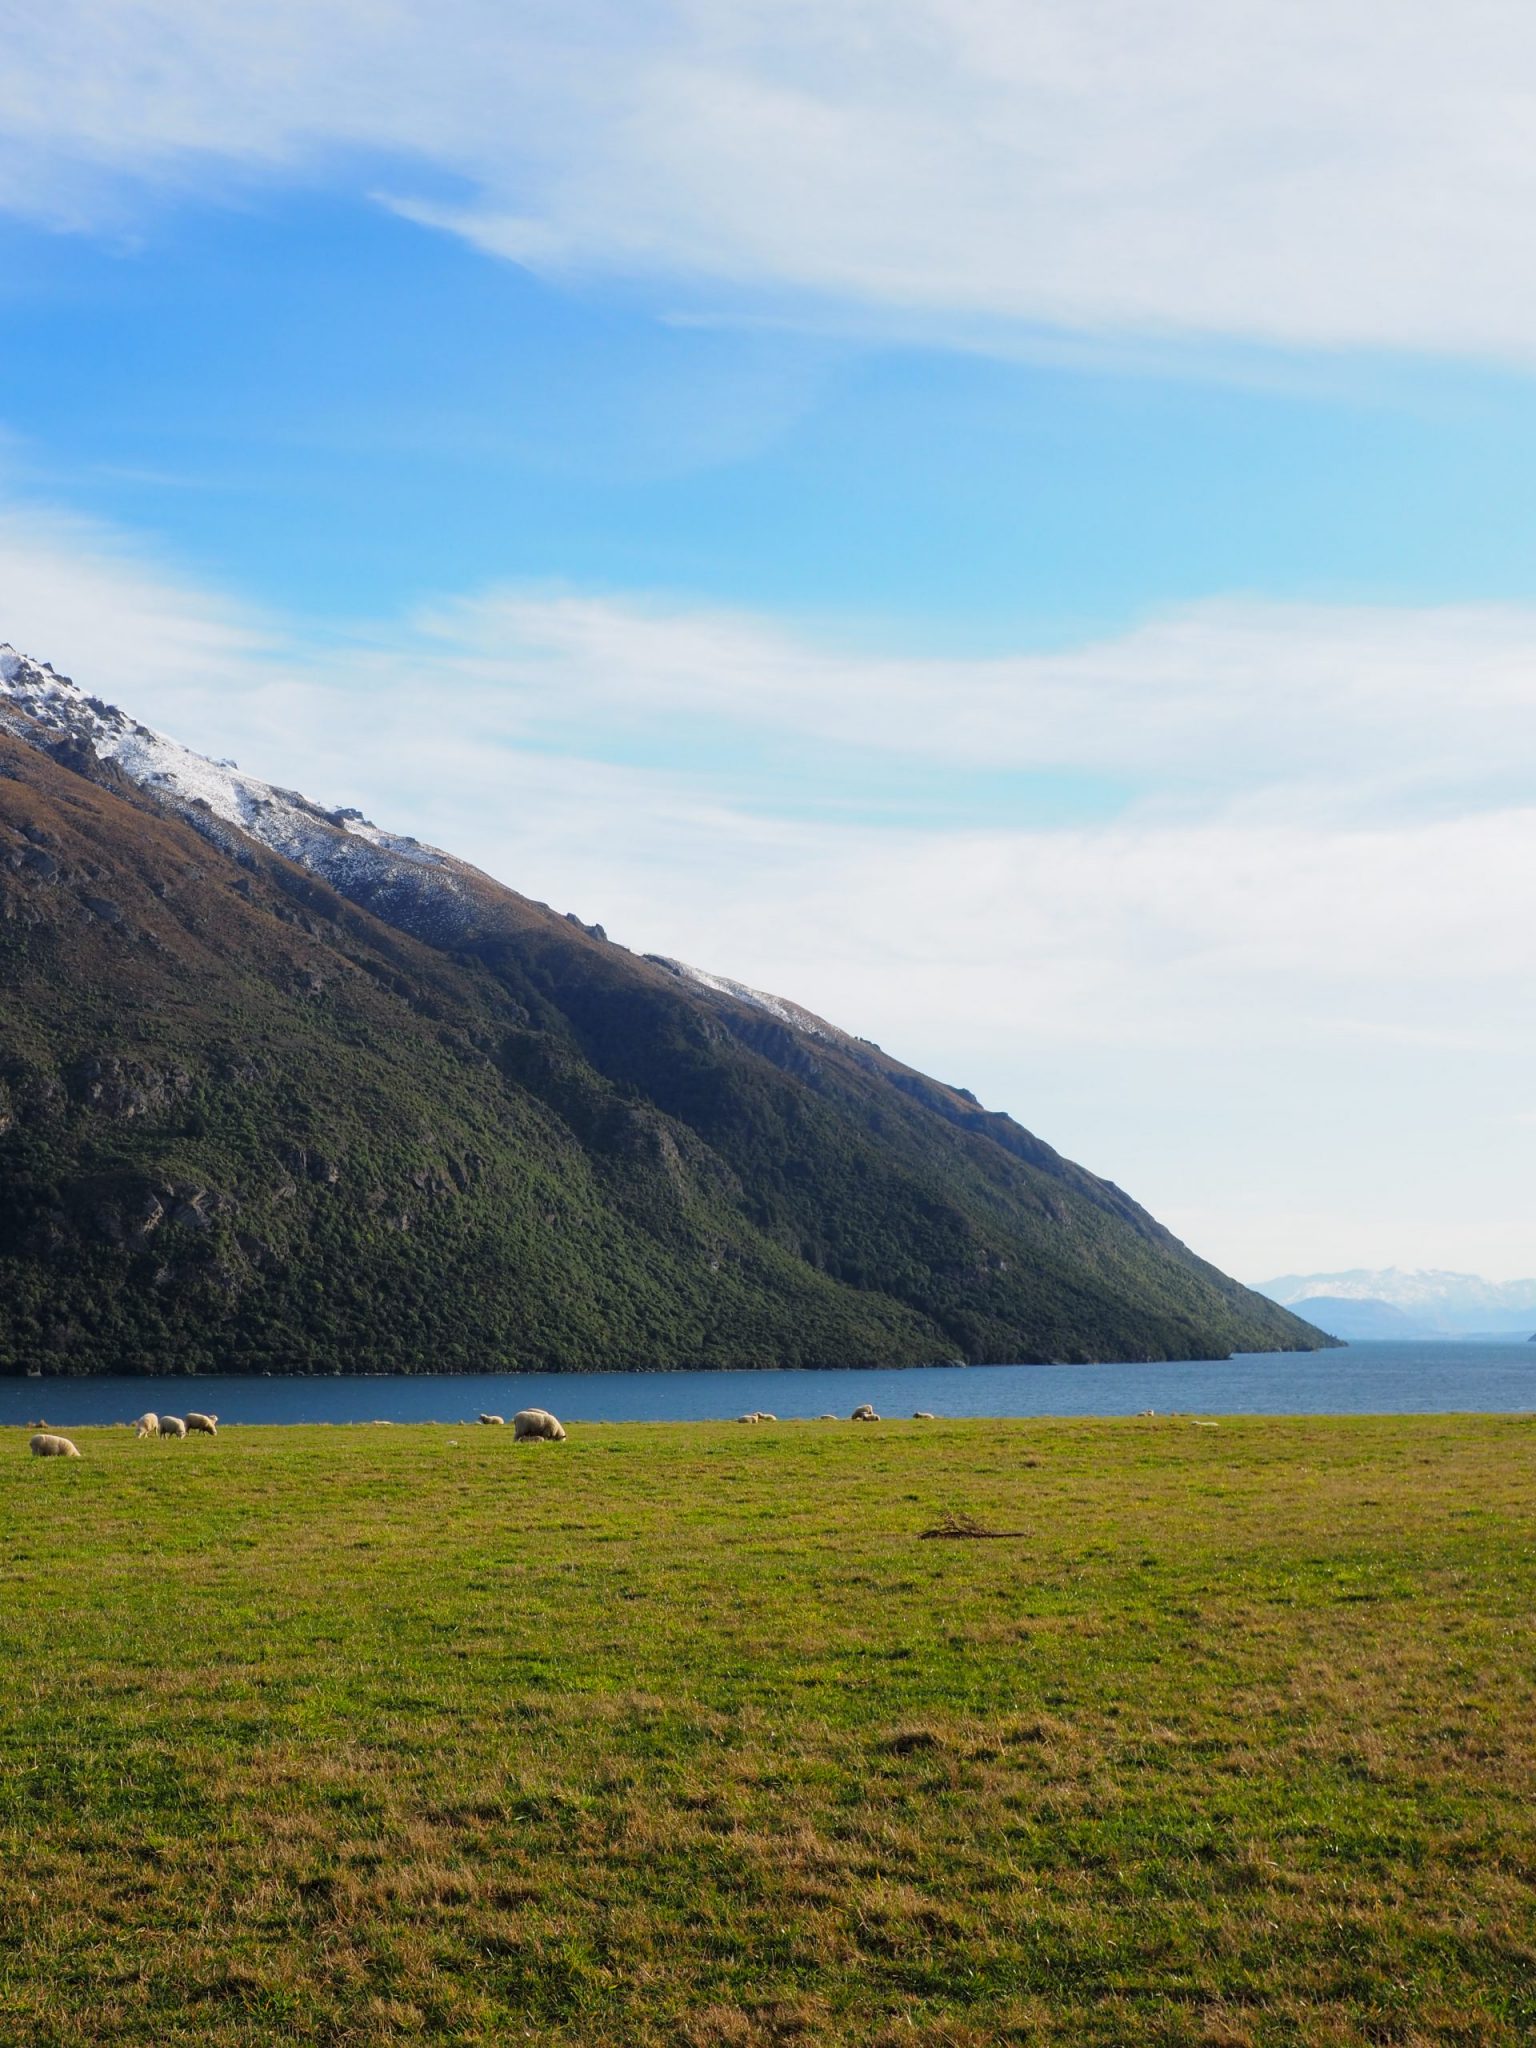 Montagne et champ avec vue sur un lac et des moutons